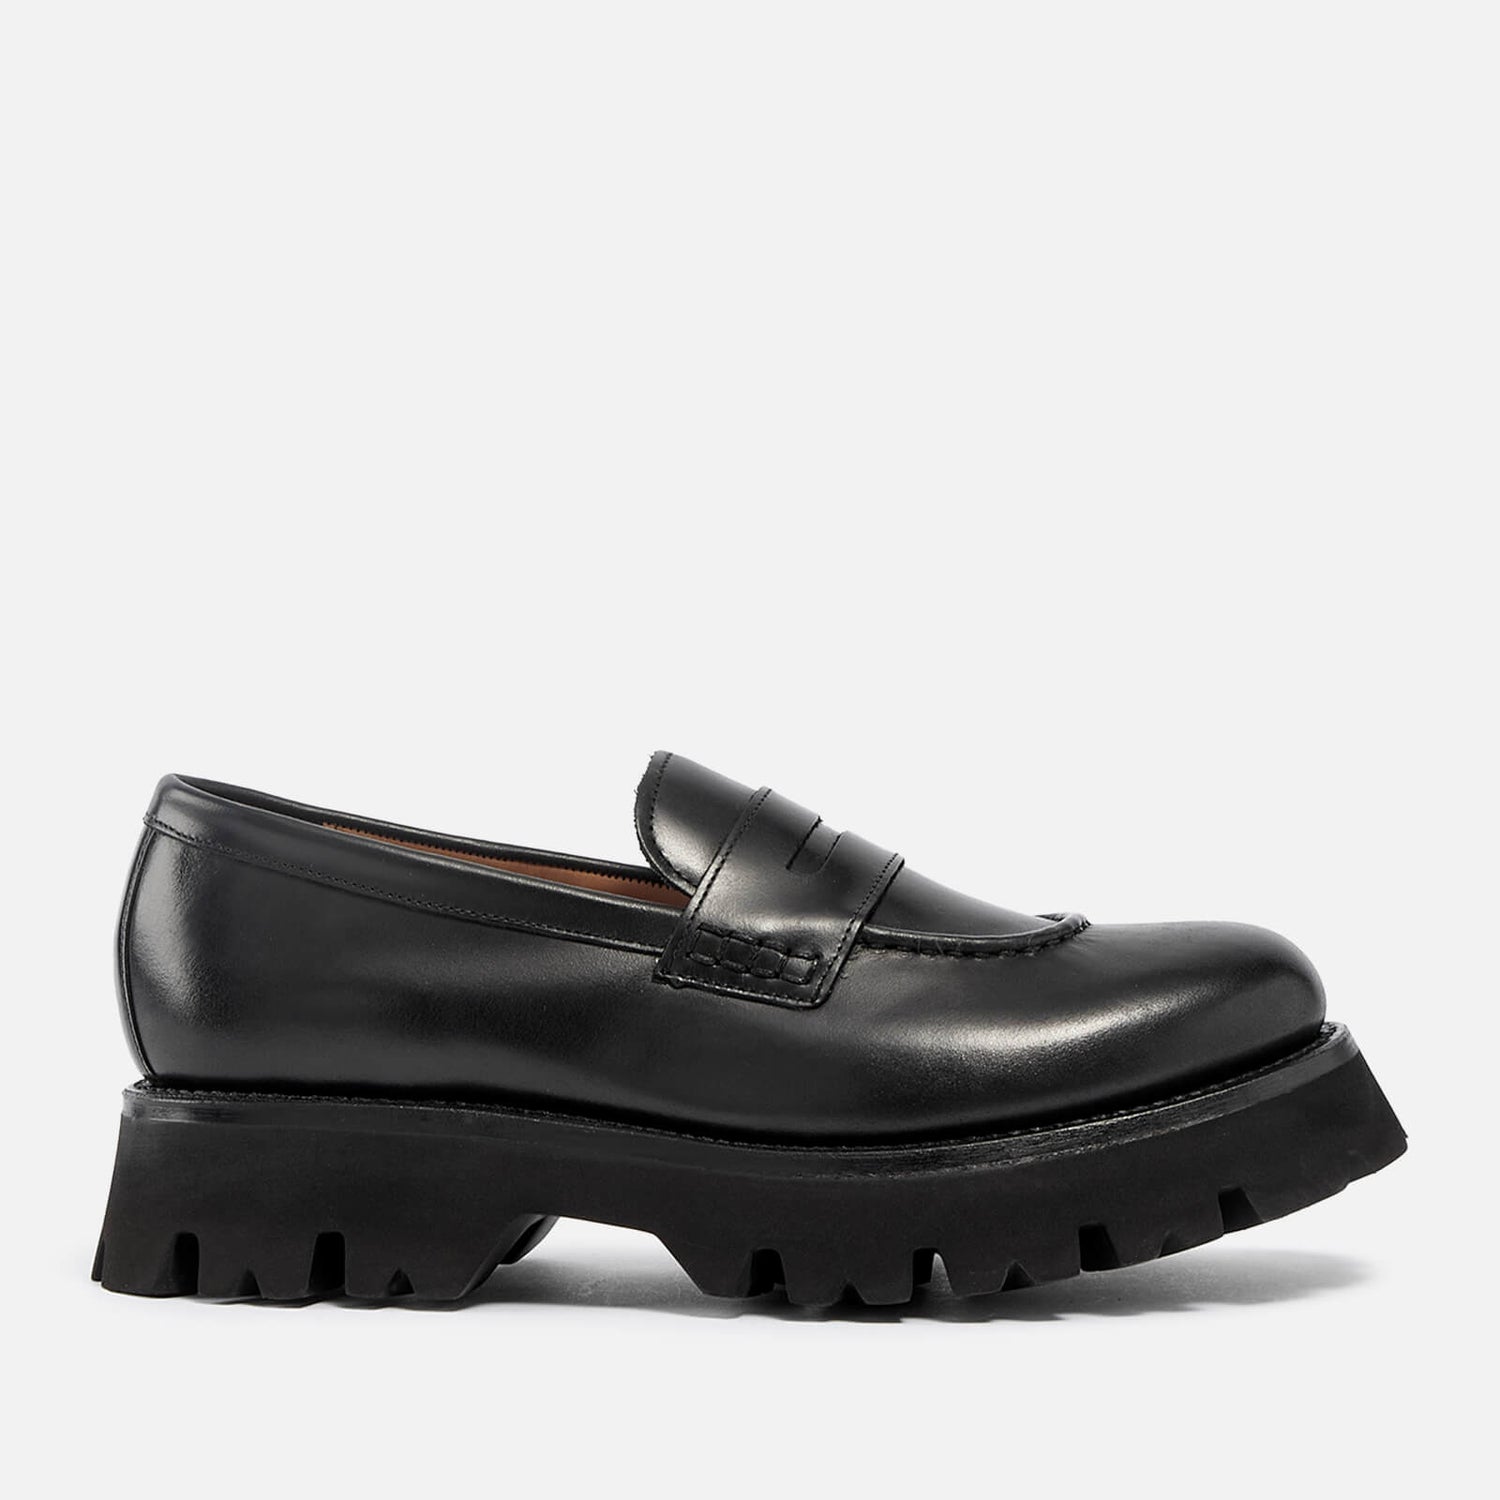 Grenson Hattie Leather Loafers - UK 3